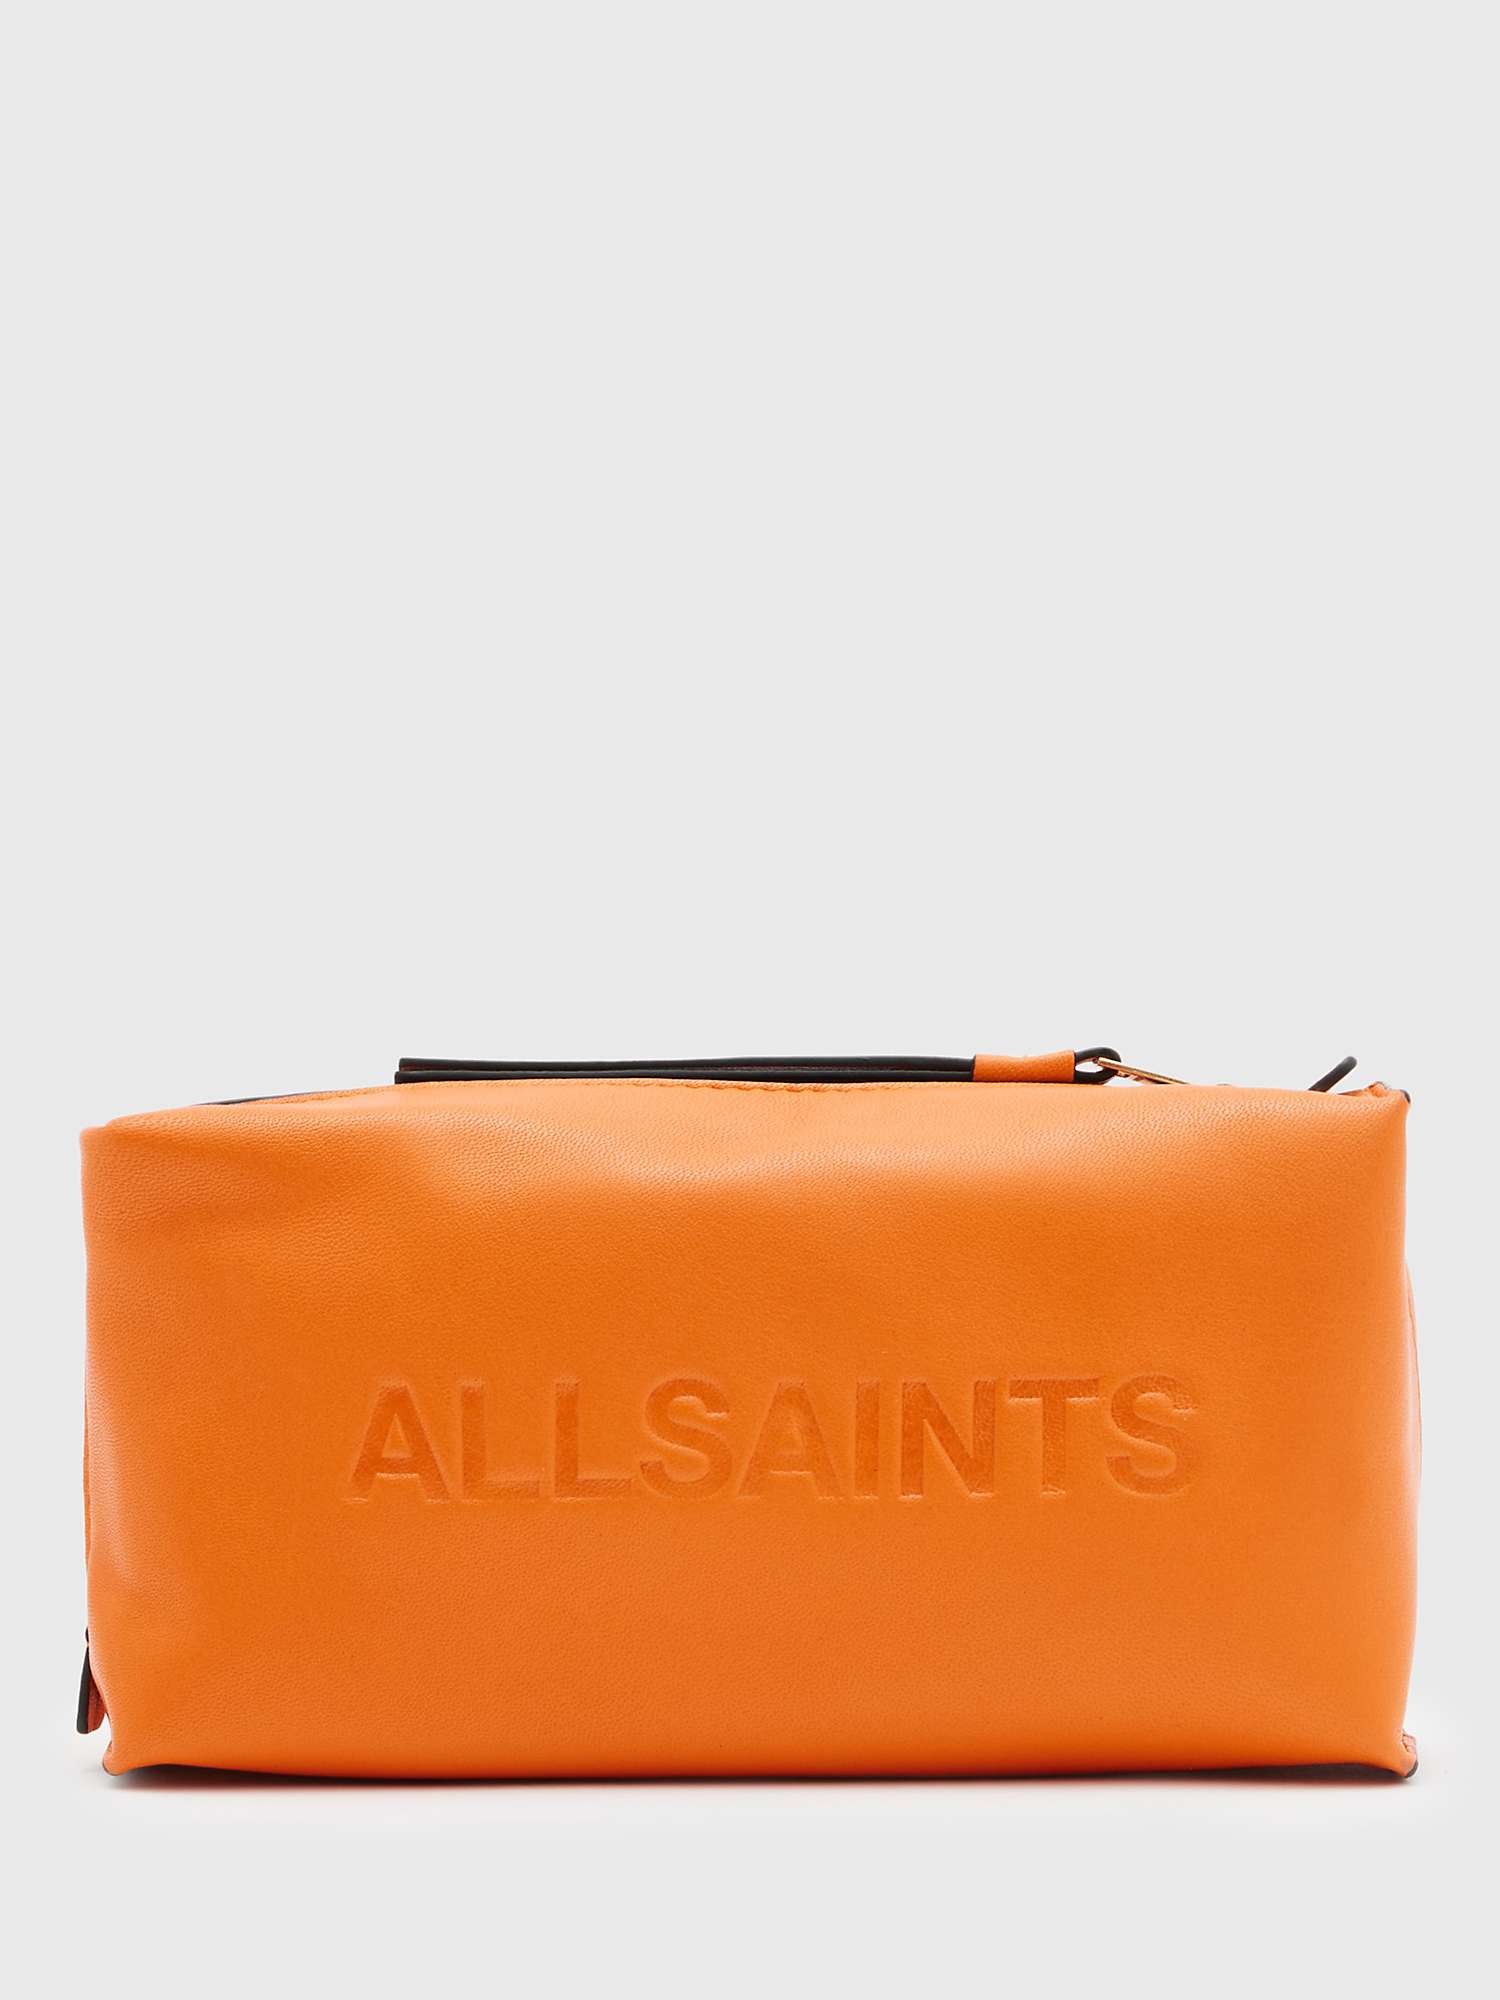 Buy AllSaints Elliotte Leather Pouch Online at johnlewis.com